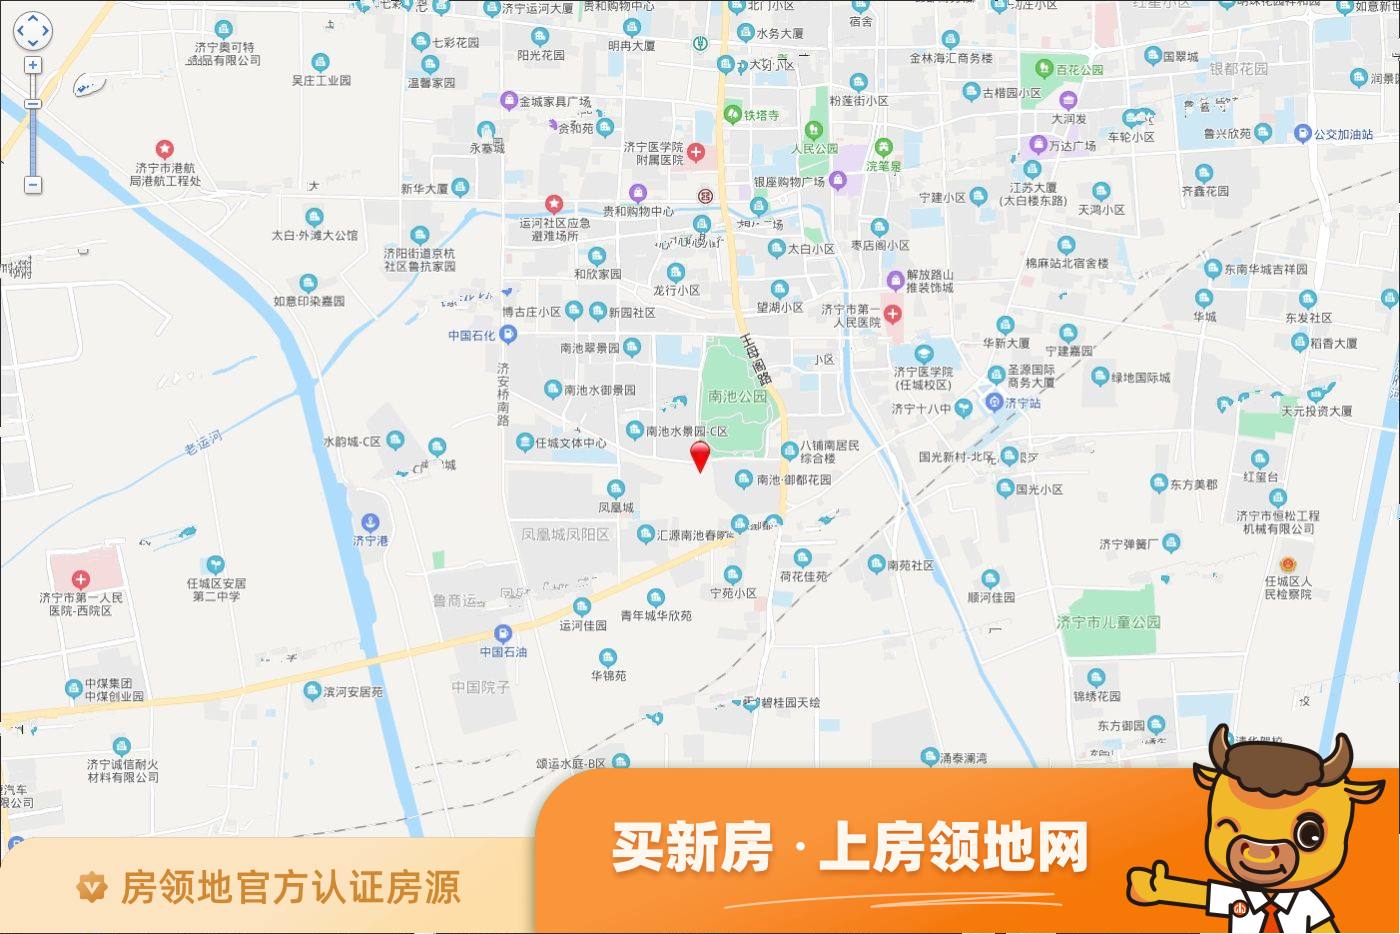 鲁浙广场位置交通图31